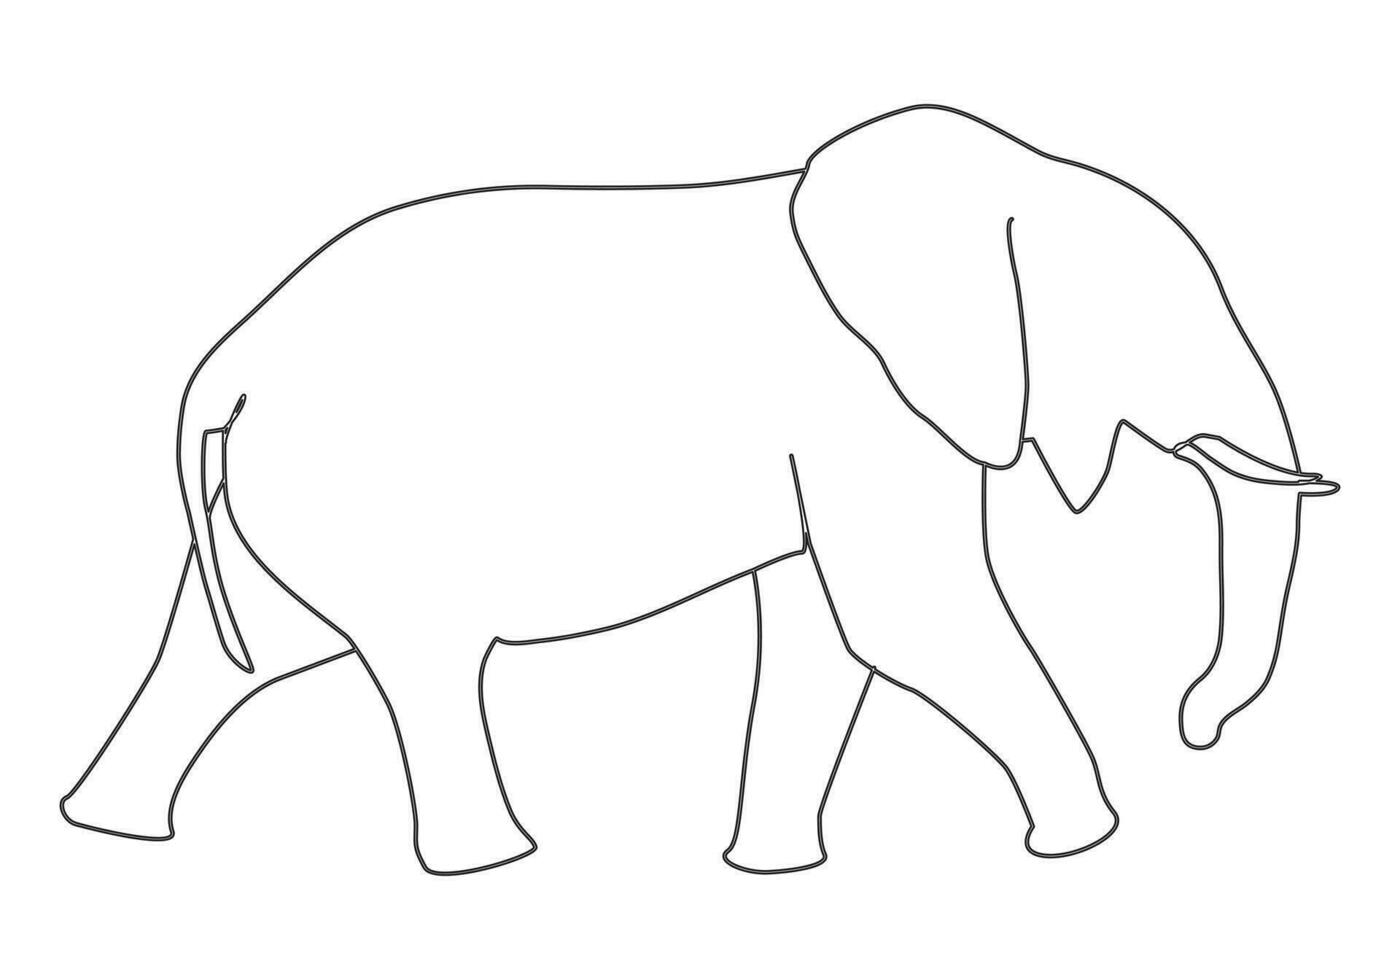 Elefant im kontinuierlich Linie Kunst Zeichnung. minimalistisch schwarz linear skizzieren isoliert auf Weiß Hintergrund. Vektor Illustration